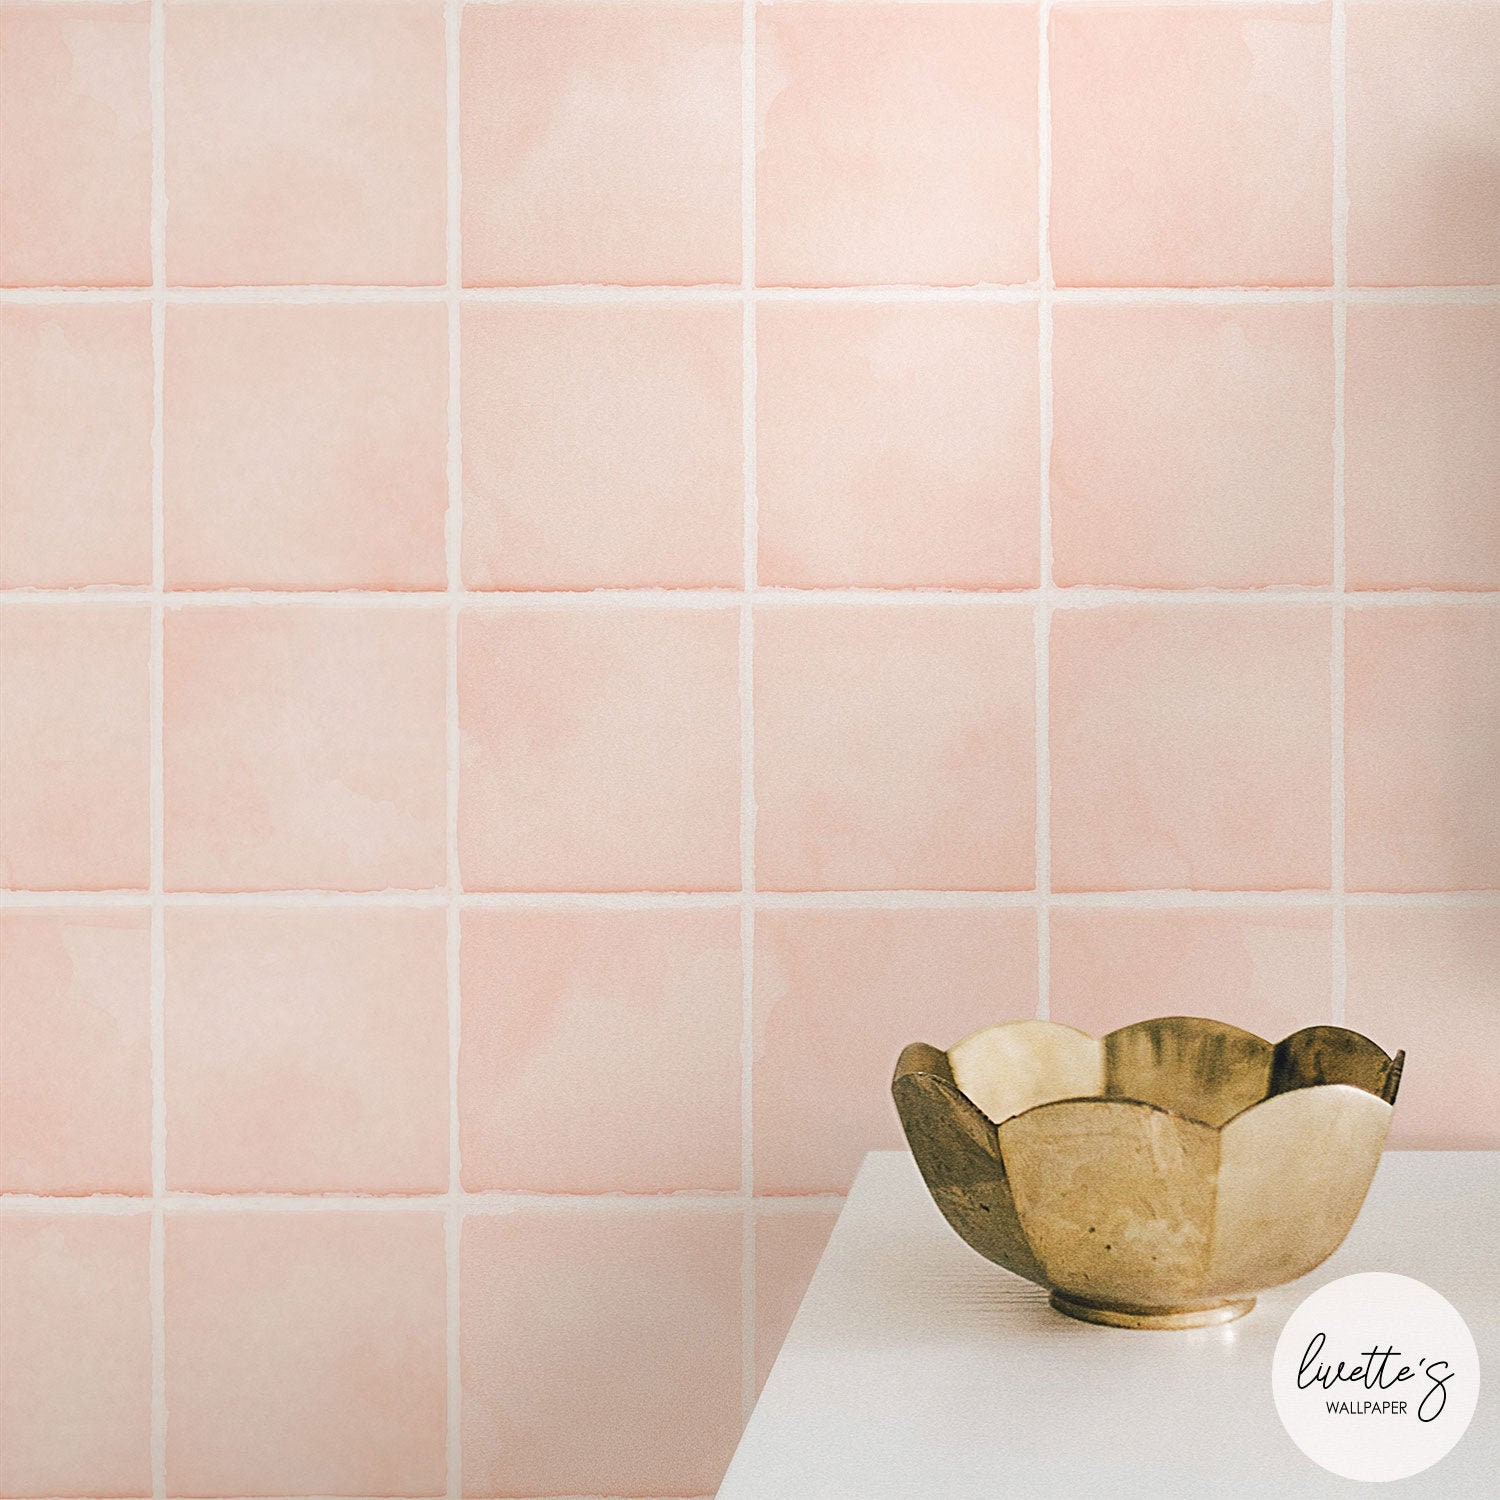 Khám phá hình ảnh với mẫu giấy dán tường faux tiles đầy sáng tạo cho phòng tắm của bạn! Sự kết hợp giữa những mảng màu và họa tiết độc đáo sẽ giúp cho không gian phòng tắm của bạn trở nên độc đáo và thu hút hơn bao giờ hết!